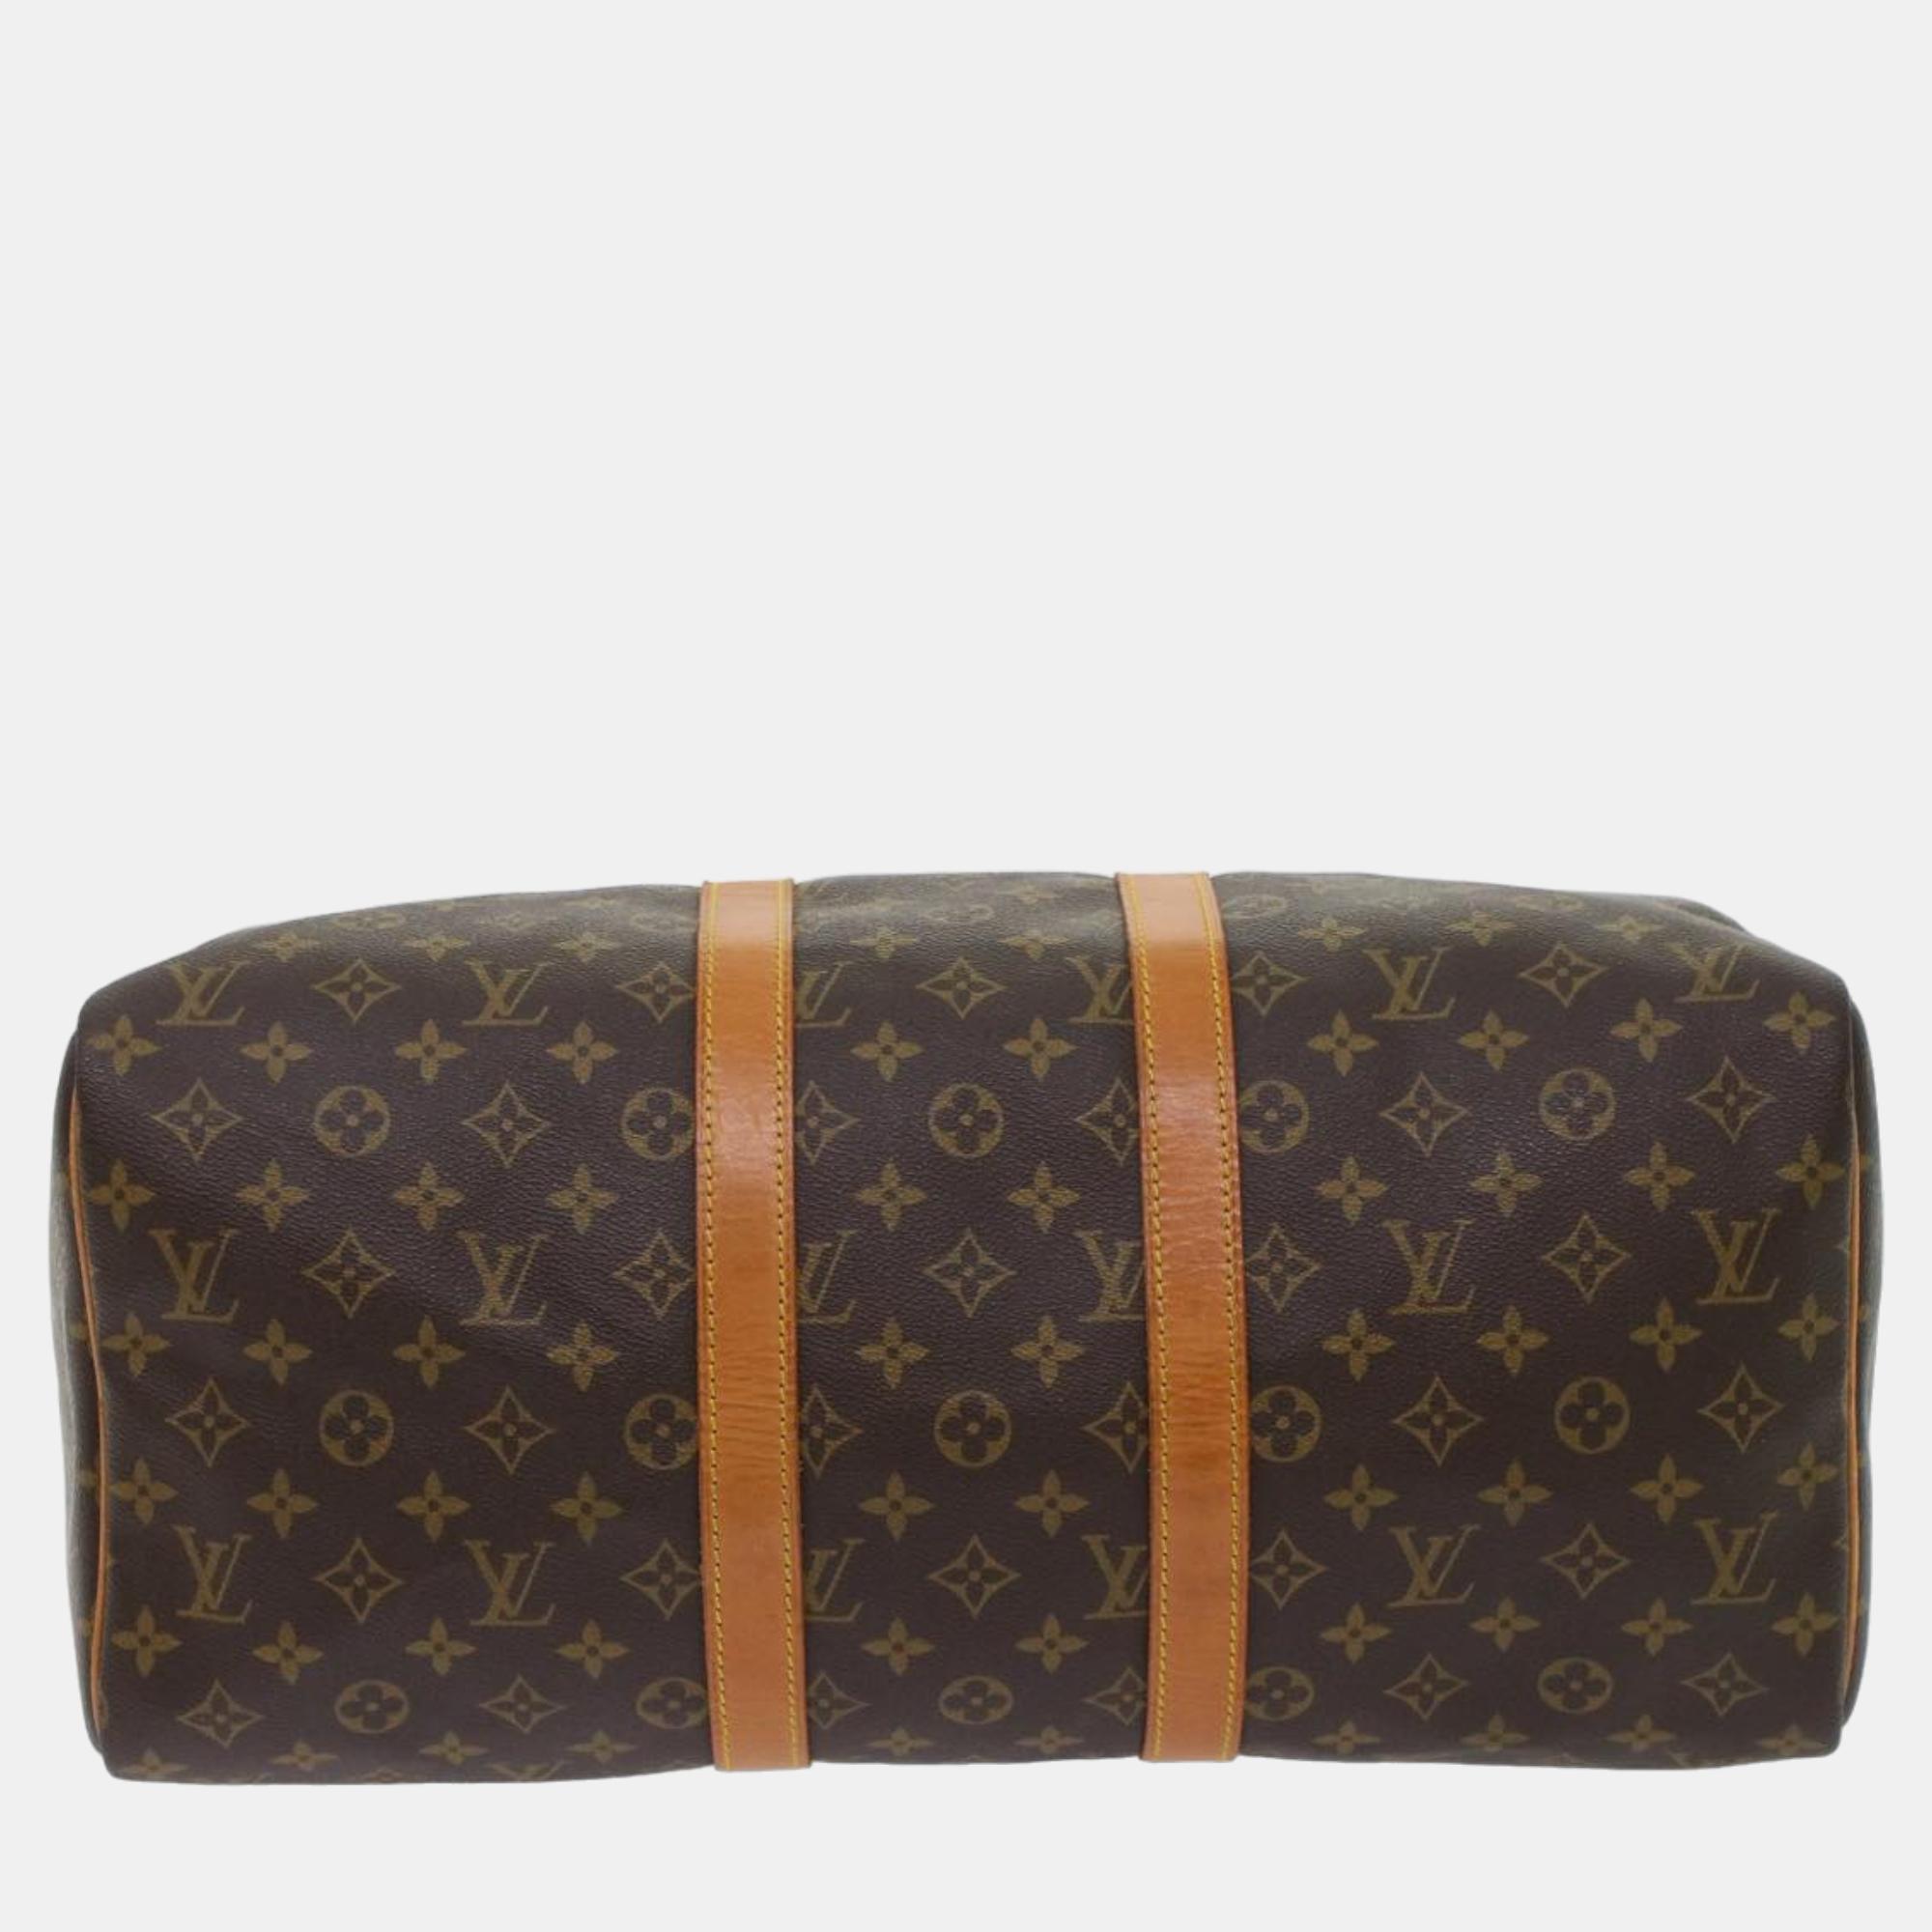 Louis Vuitton Brown Canvas Keepall 45 Travel Bag